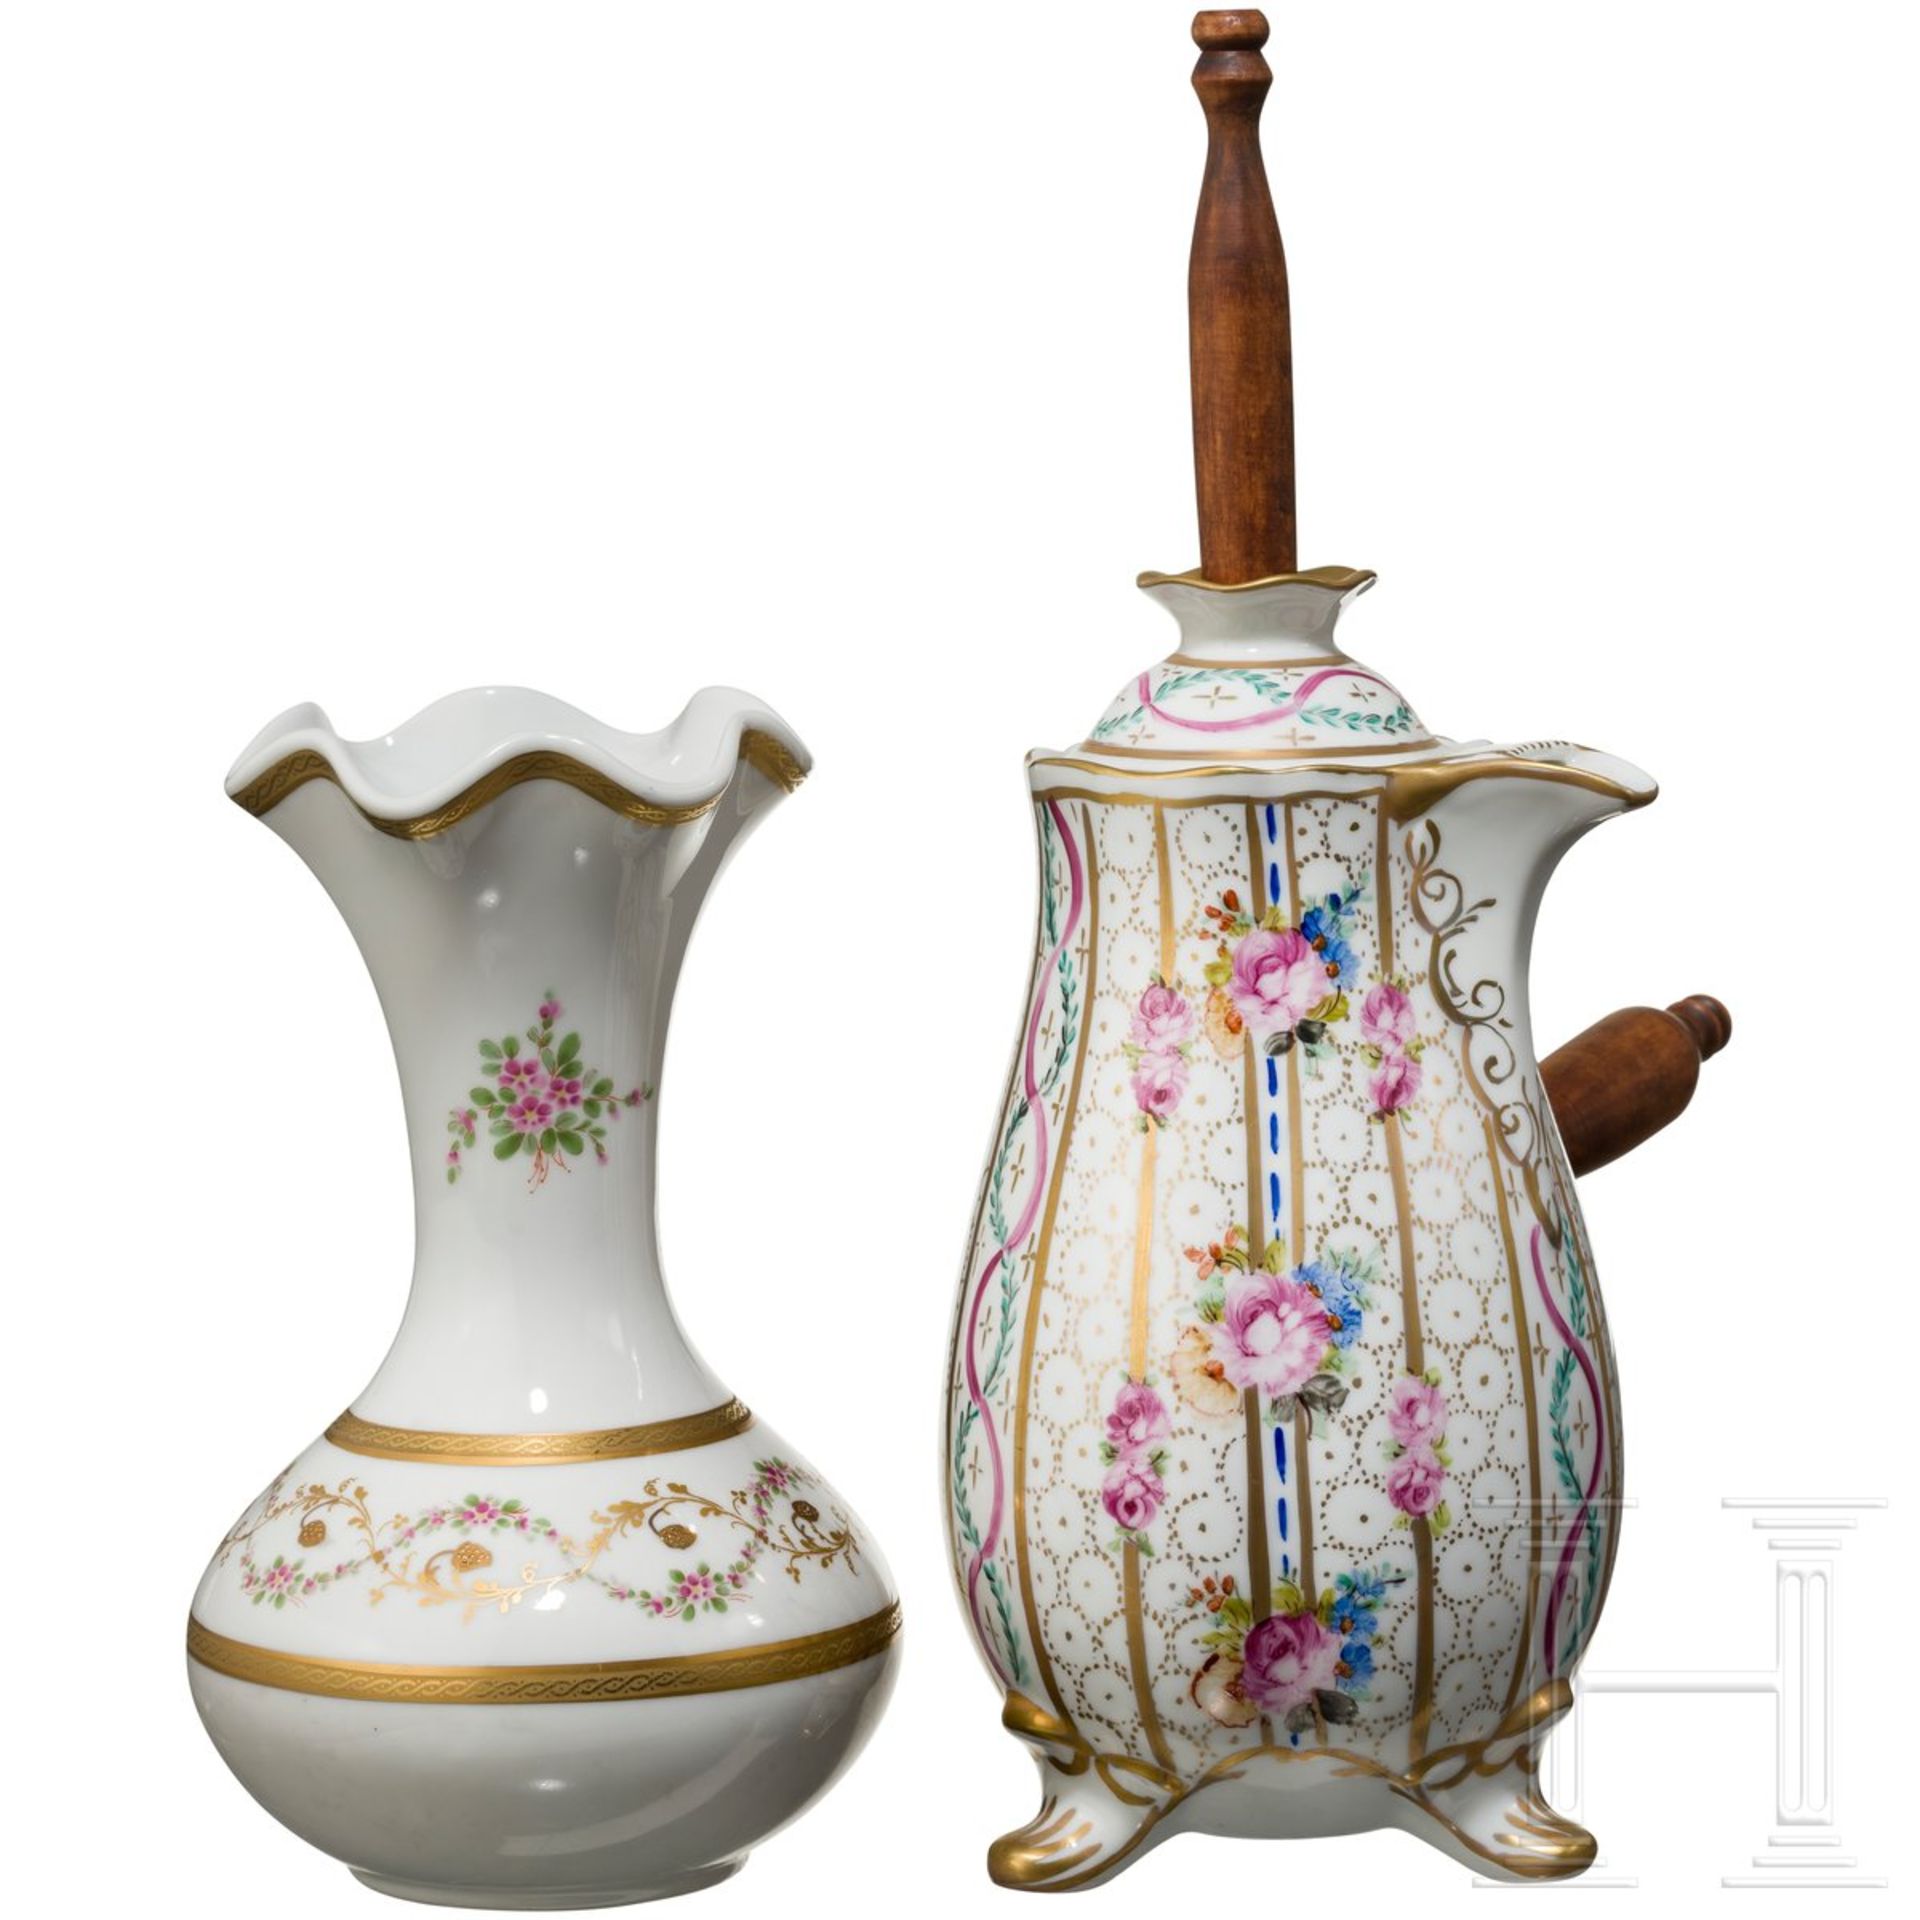 Kanne und Vase, Porzellanmanufaktur Limoges, 20. Jhdt. - Bild 2 aus 4